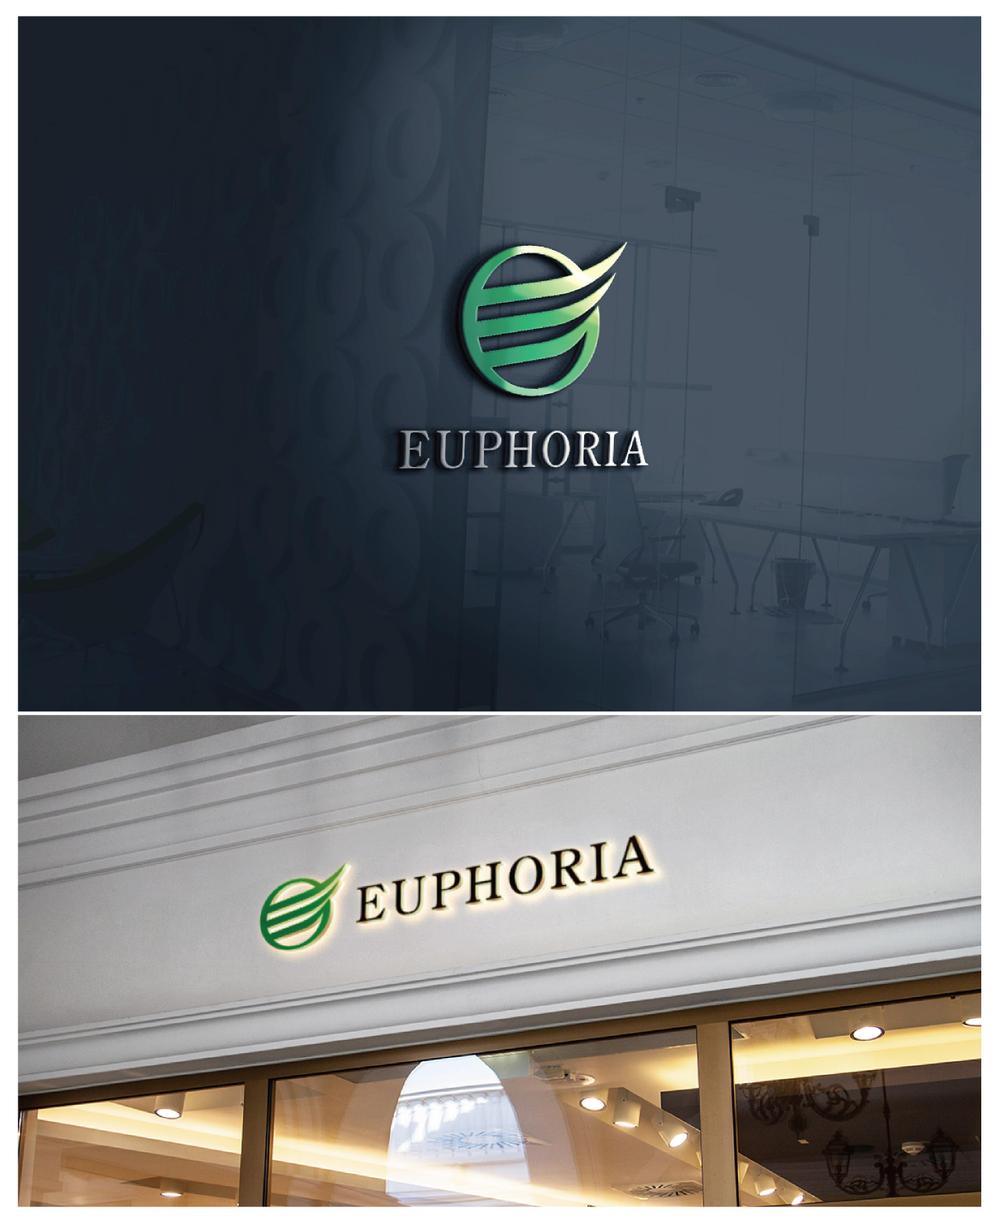 保険代理店業　「ユーフォリア」のロゴ